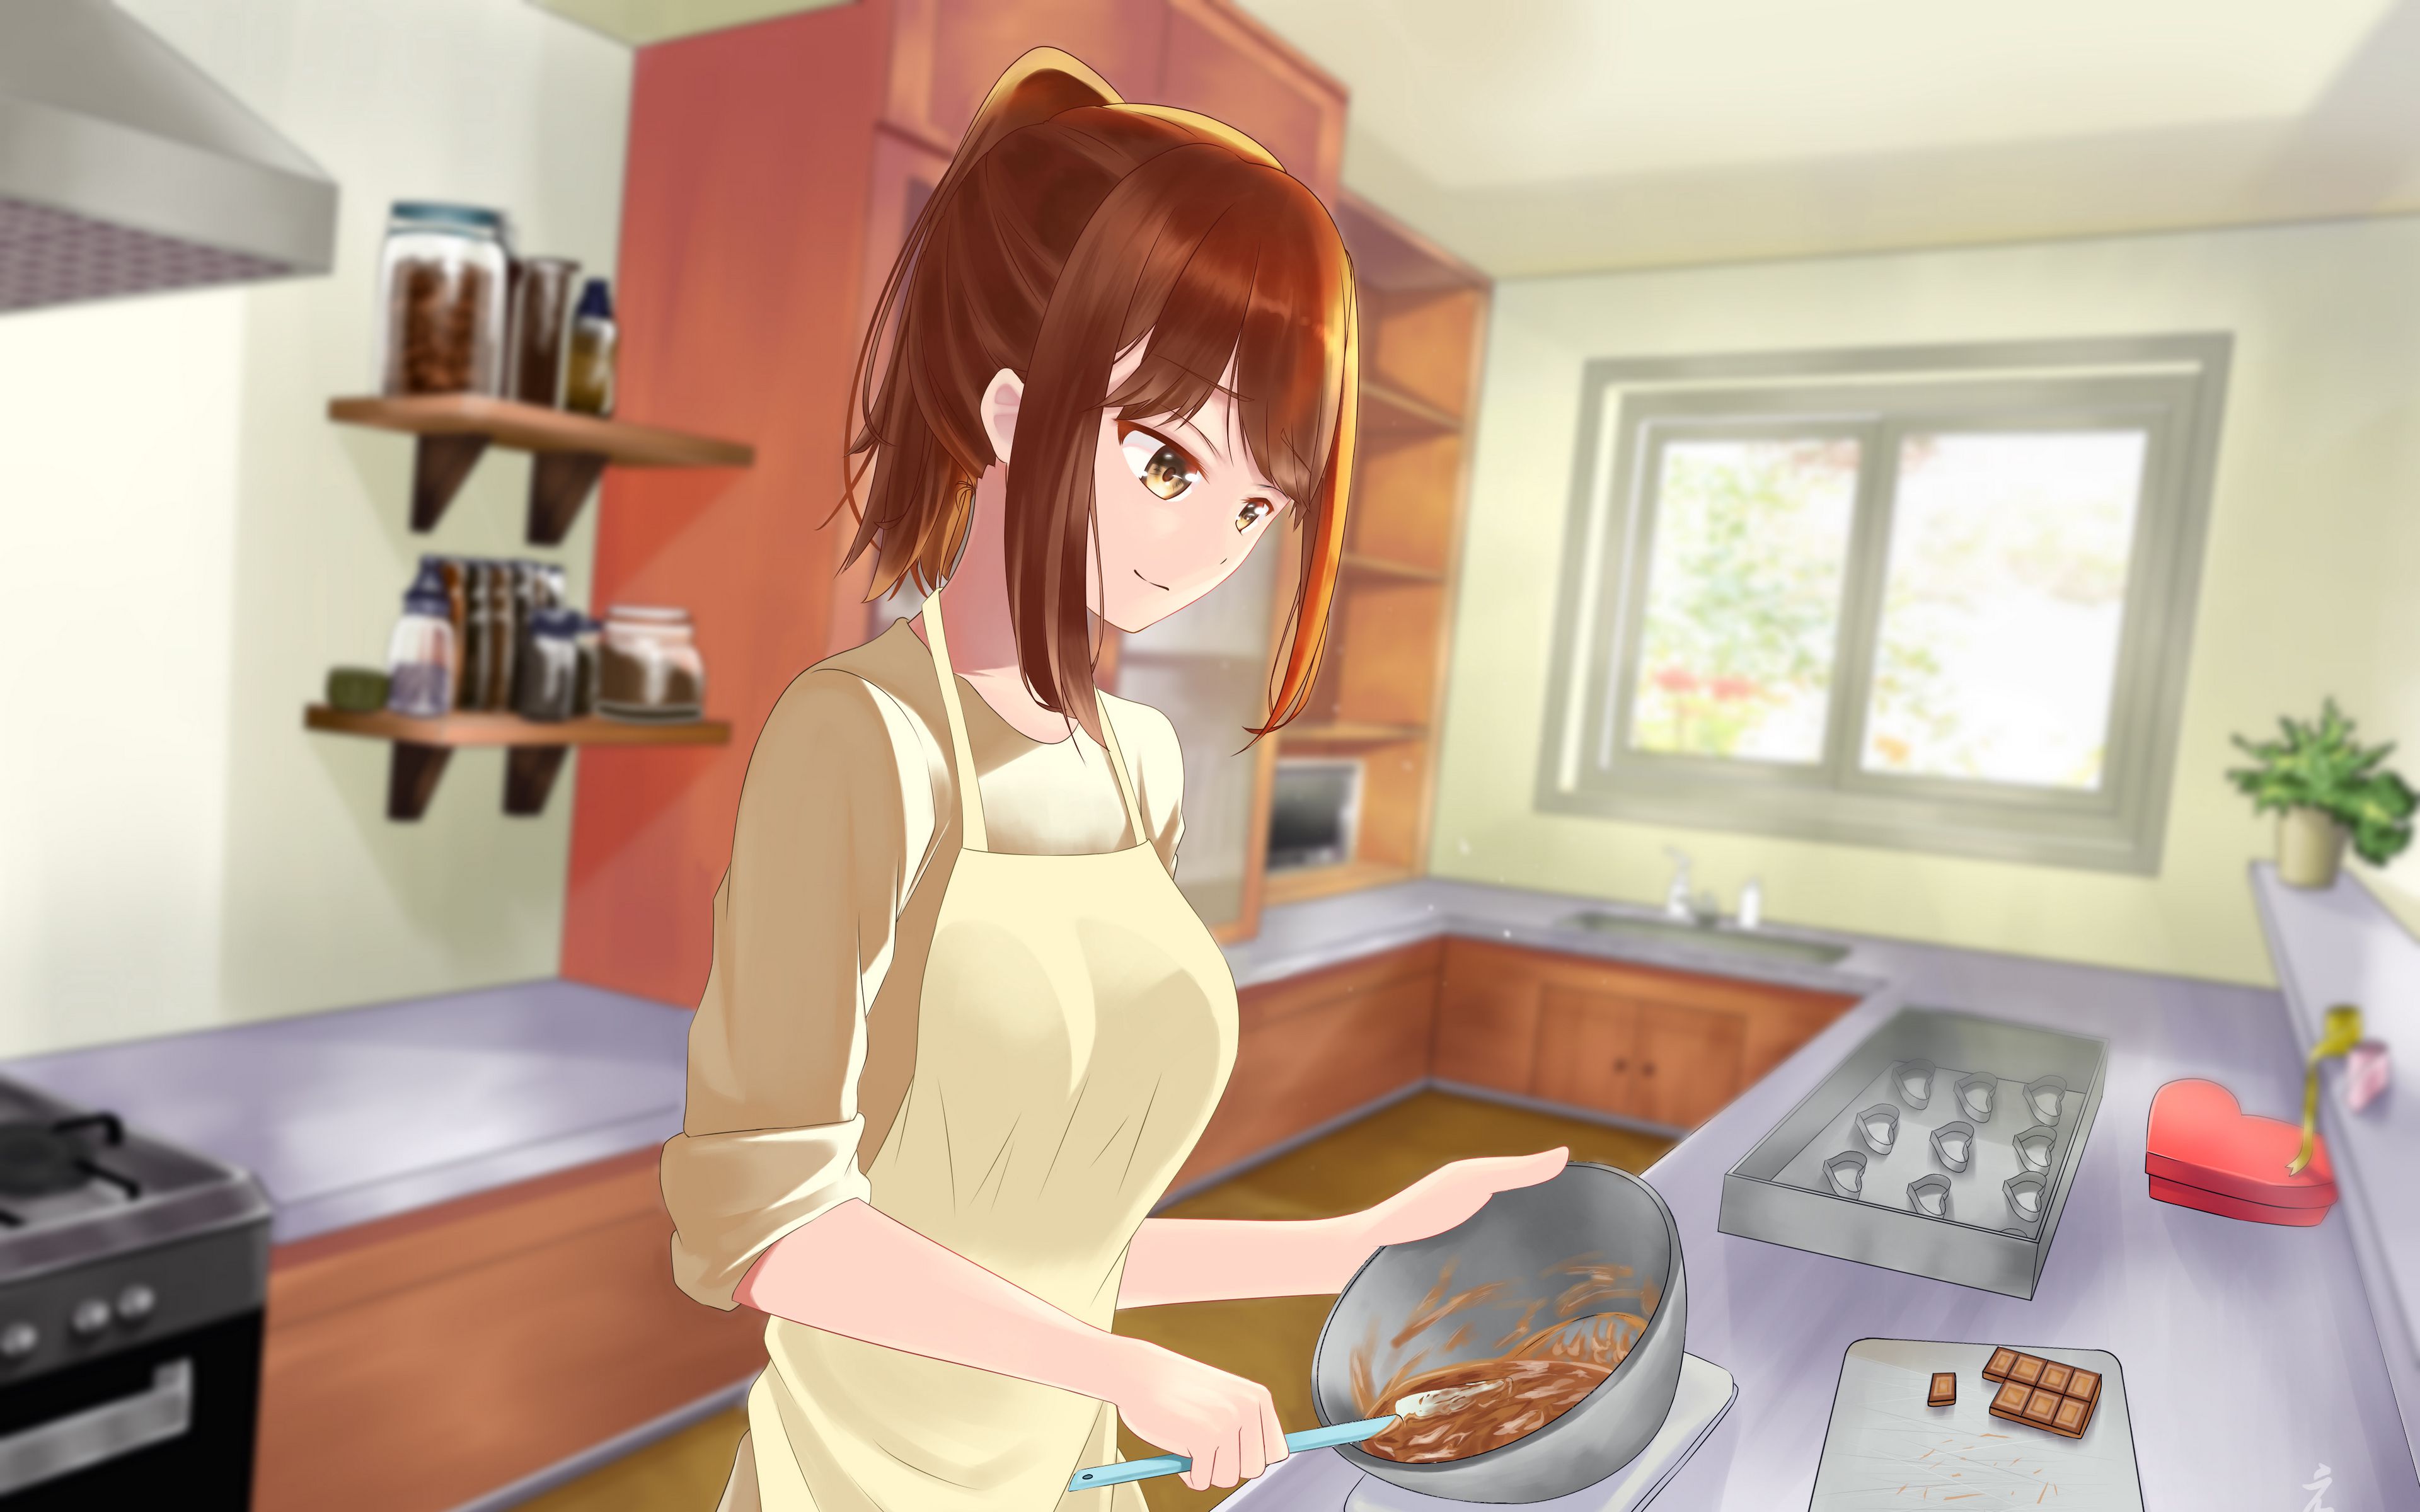 Bức hình nền anime nhà bếp sẽ mang đến cho bạn cảm giác ấm áp, vui tươi và tràn đầy niềm vui trong cuộc sống. Hãy chiêm ngưỡng những màu sắc sinh động, những chi tiết đầy sáng tạo và tiếng cười vui nhộn của các nhân vật anime trong không gian bếp.